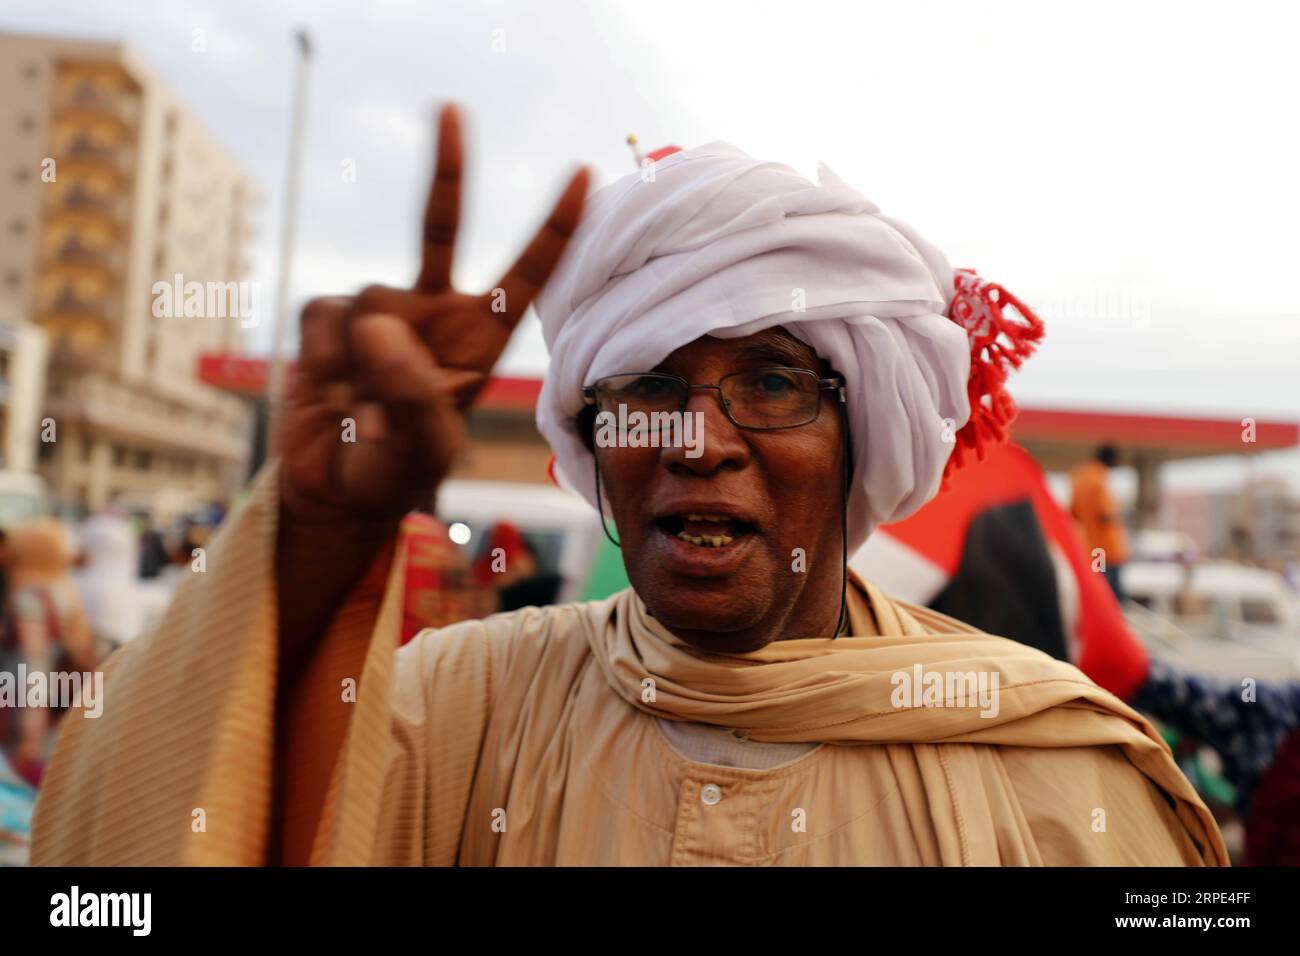 (190817) -- KHARTUM, 17. August 2019 -- Ein Sudanese feiert am 17. August 2019 die offizielle Unterzeichnung der politischen und verfassungsmäßigen Erklärungen zwischen dem Militärübergangsrat und der Oppositionsallianz für Freiheit und Wandel in Khartum, Sudan, der sudanesische Übergangsmilitärrat (TMC) und die Oppositionsallianz für Freiheit und Wandel unterzeichneten am Samstag offiziell die politischen und verfassungsrechtlichen Erklärungen zum Beginn der Übergangsregelung im Sudan. SUDAN-KHARTUM-ÜBERGANGSZEIT DOKUMENTE-UNTERSCHRIFTENFEIER MOHAMEDXKHIDIR PUBLICATIONXNOTXINXCHN Stockfoto